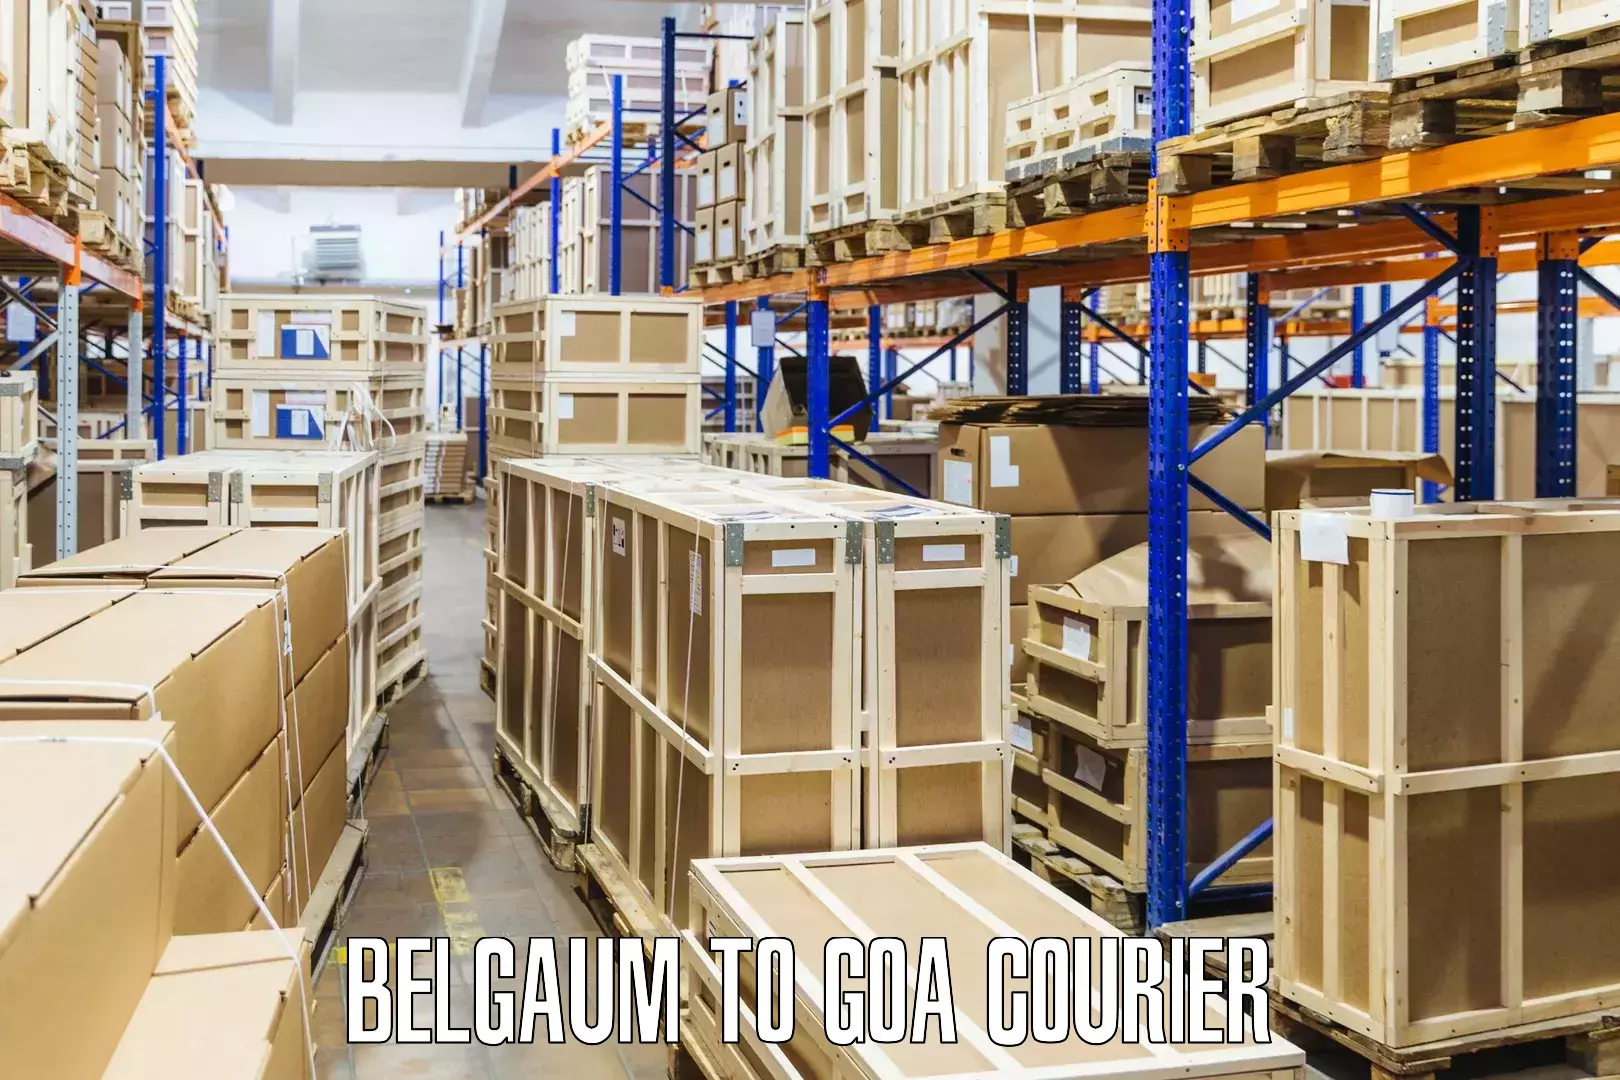 Flexible delivery scheduling Belgaum to IIT Goa